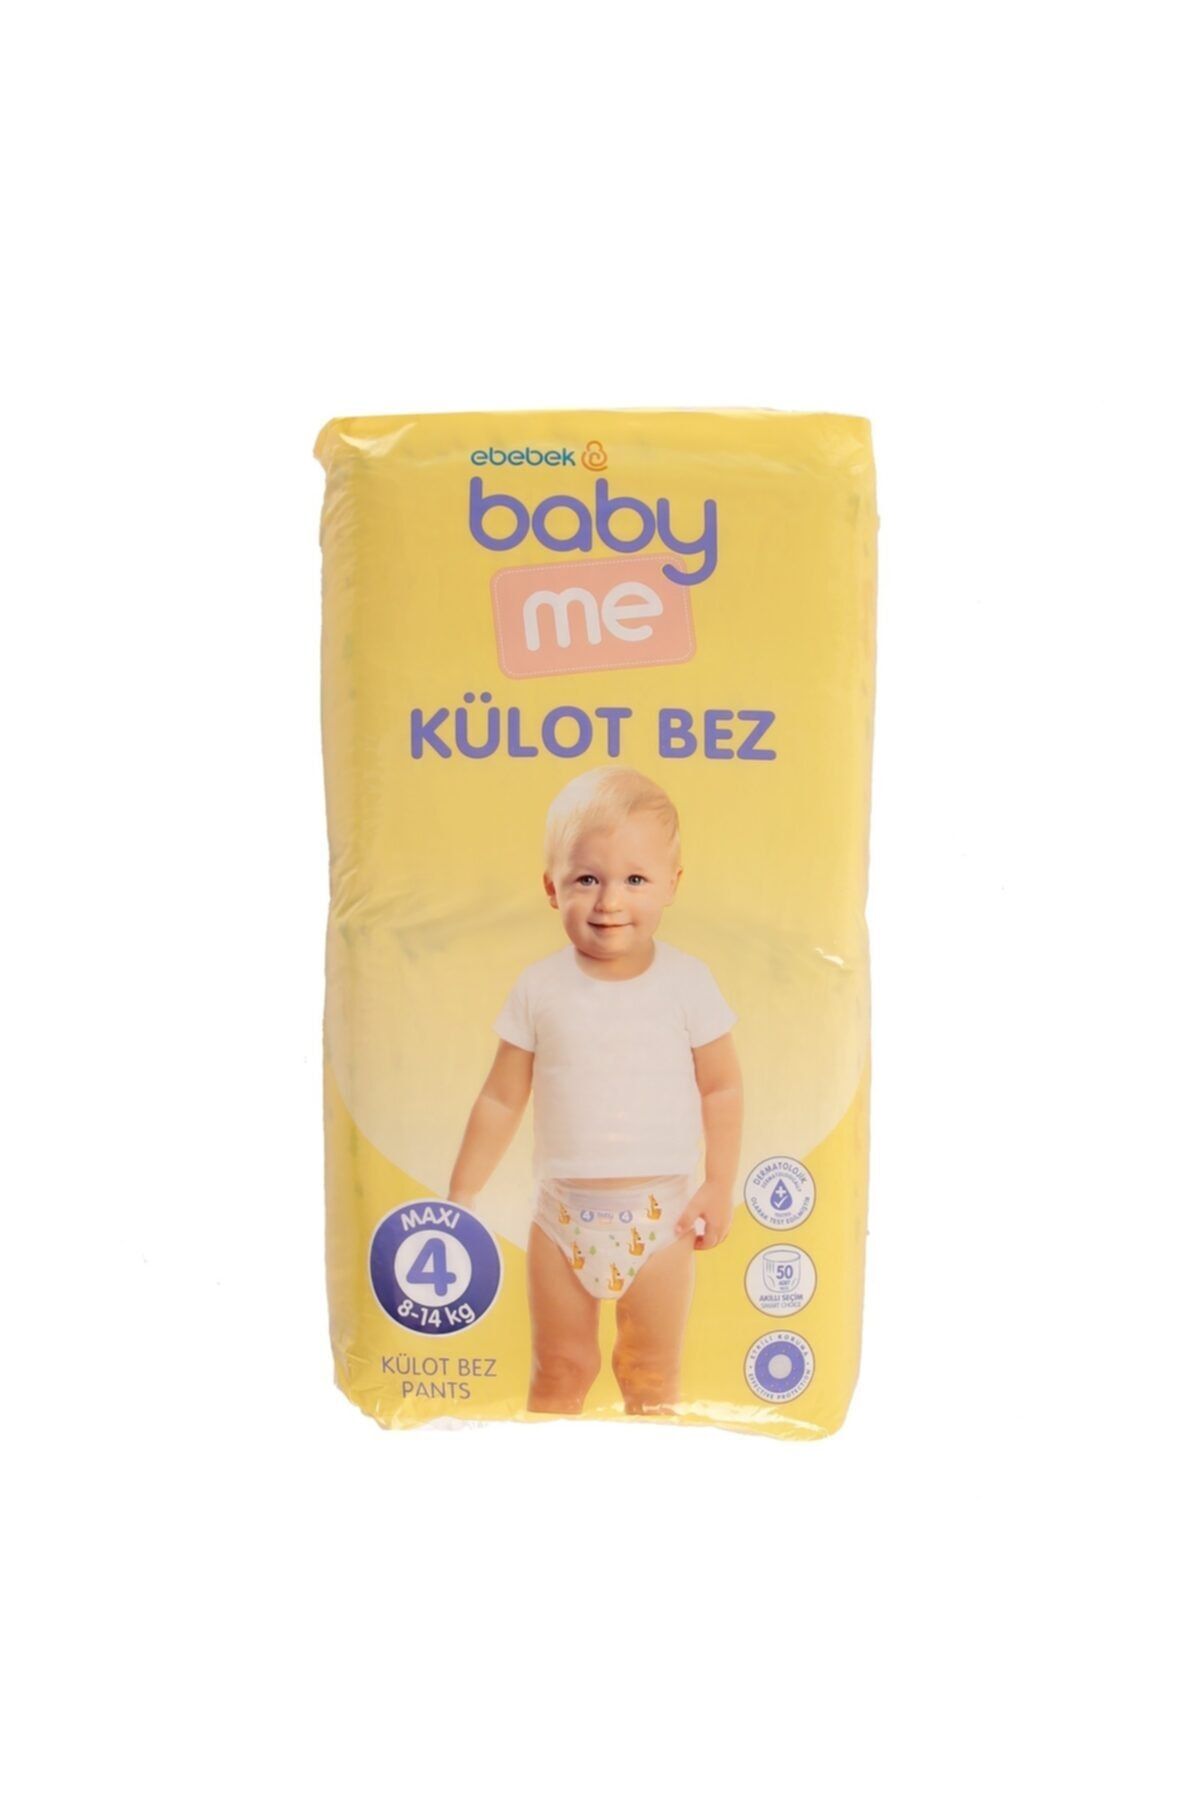 Baby Me Baby Me Külot Bez Maxi 4 Numara 8-14 Kg 50 Adet